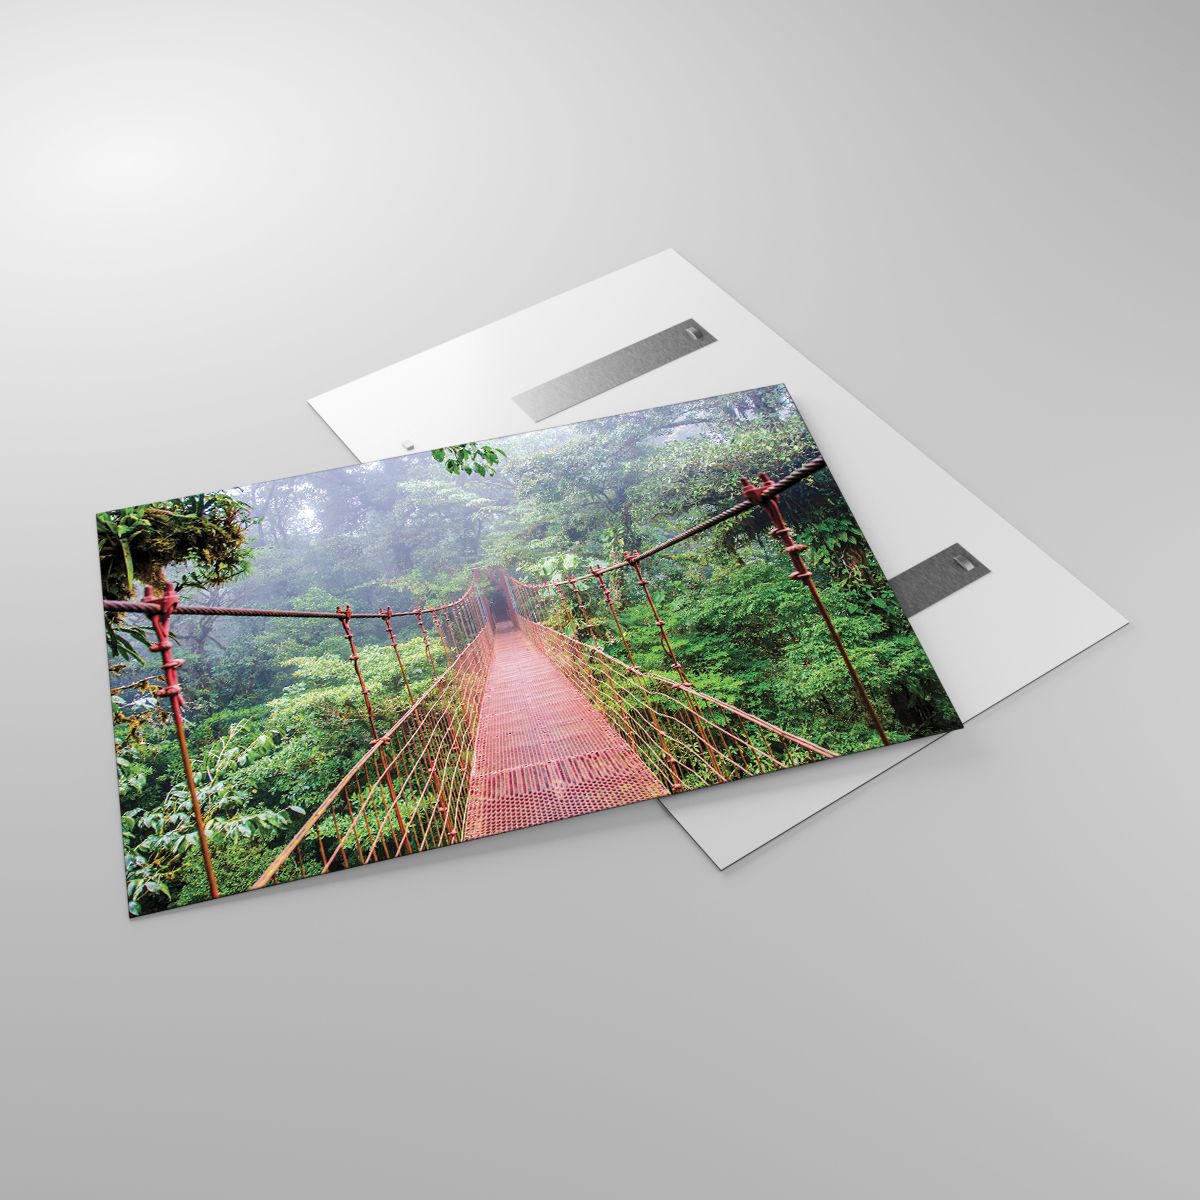 Glasbild Landschaft, Glasbild Urwald, Glasbild Costa Rica, Glasbild Hängende Brücke, Glasbild Natur